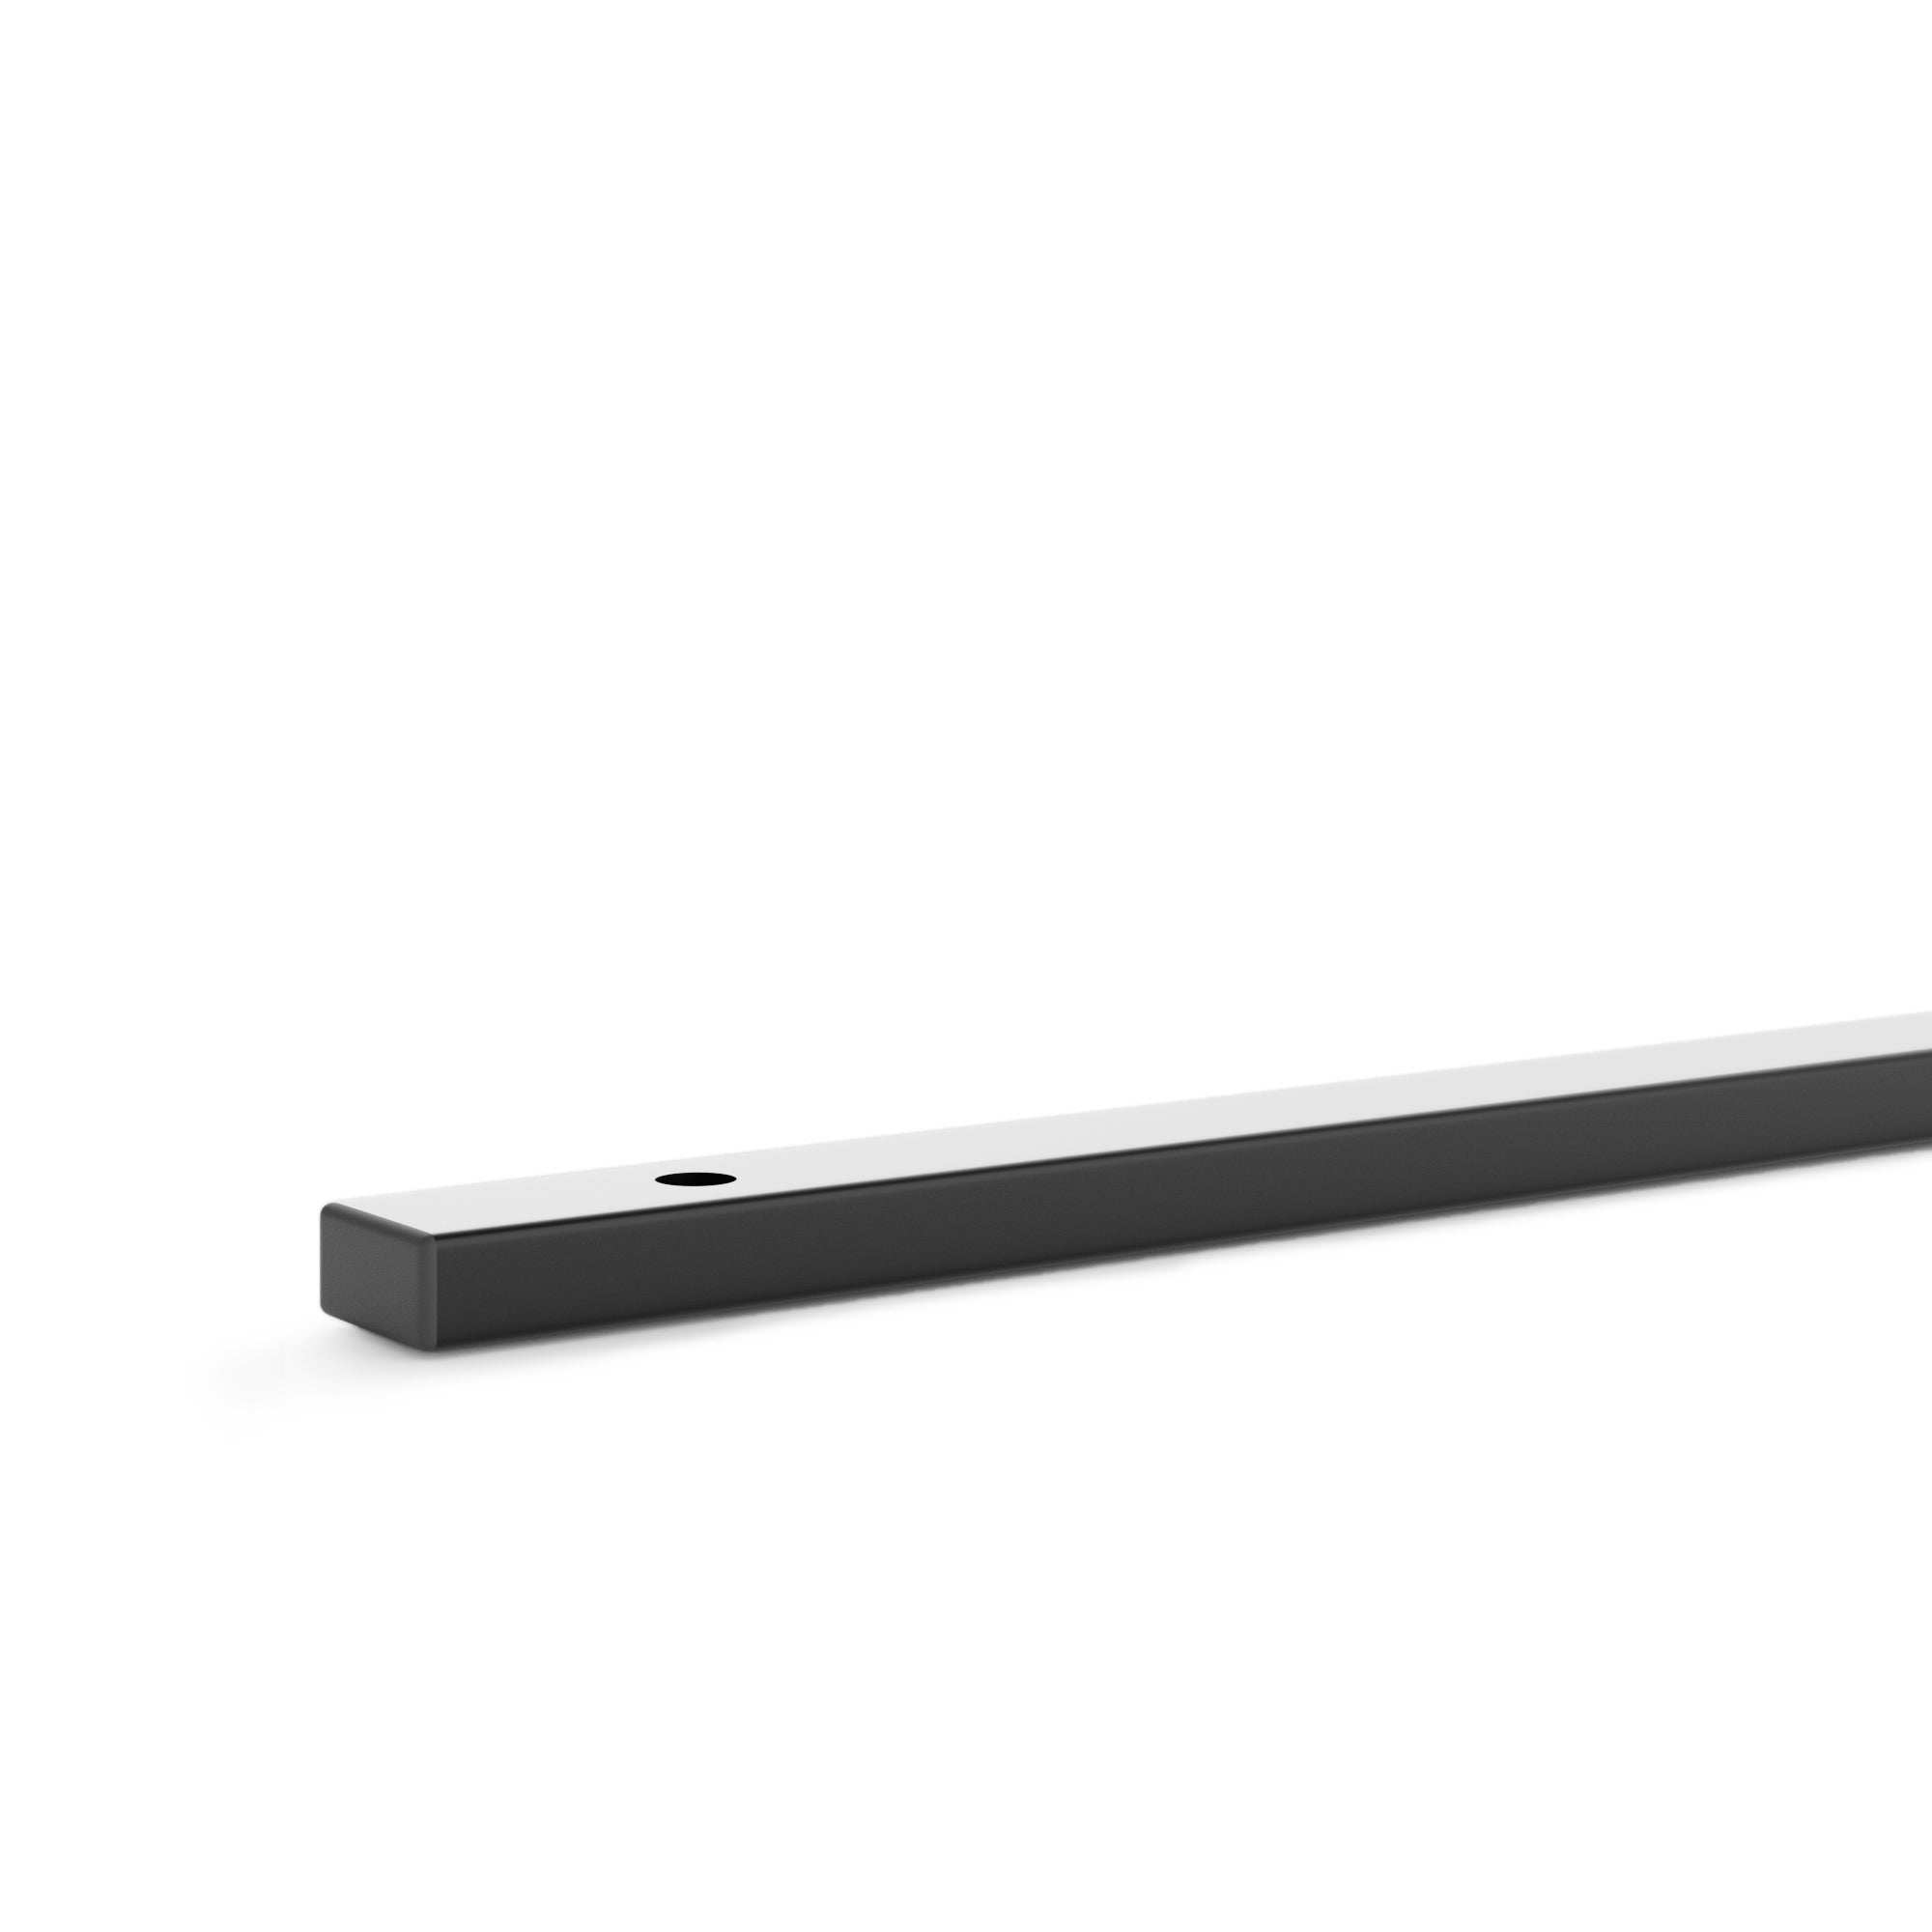 Image of Modular Black 180cm Shelf Support Component Black